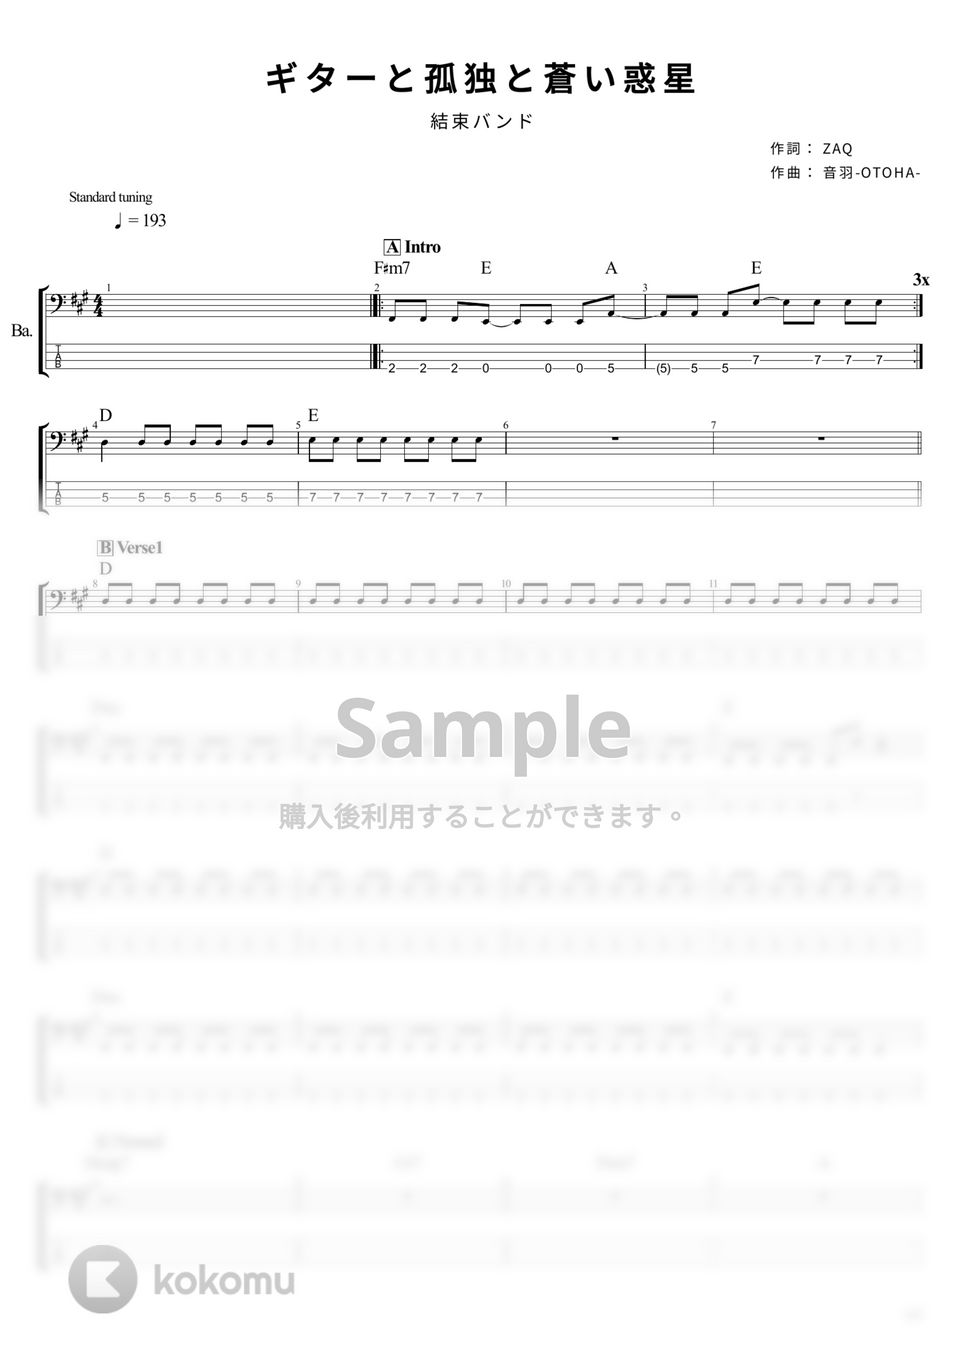 結束バンド - ギターと孤独と蒼い惑星 (ベース Tab譜 4弦) by T's bass score